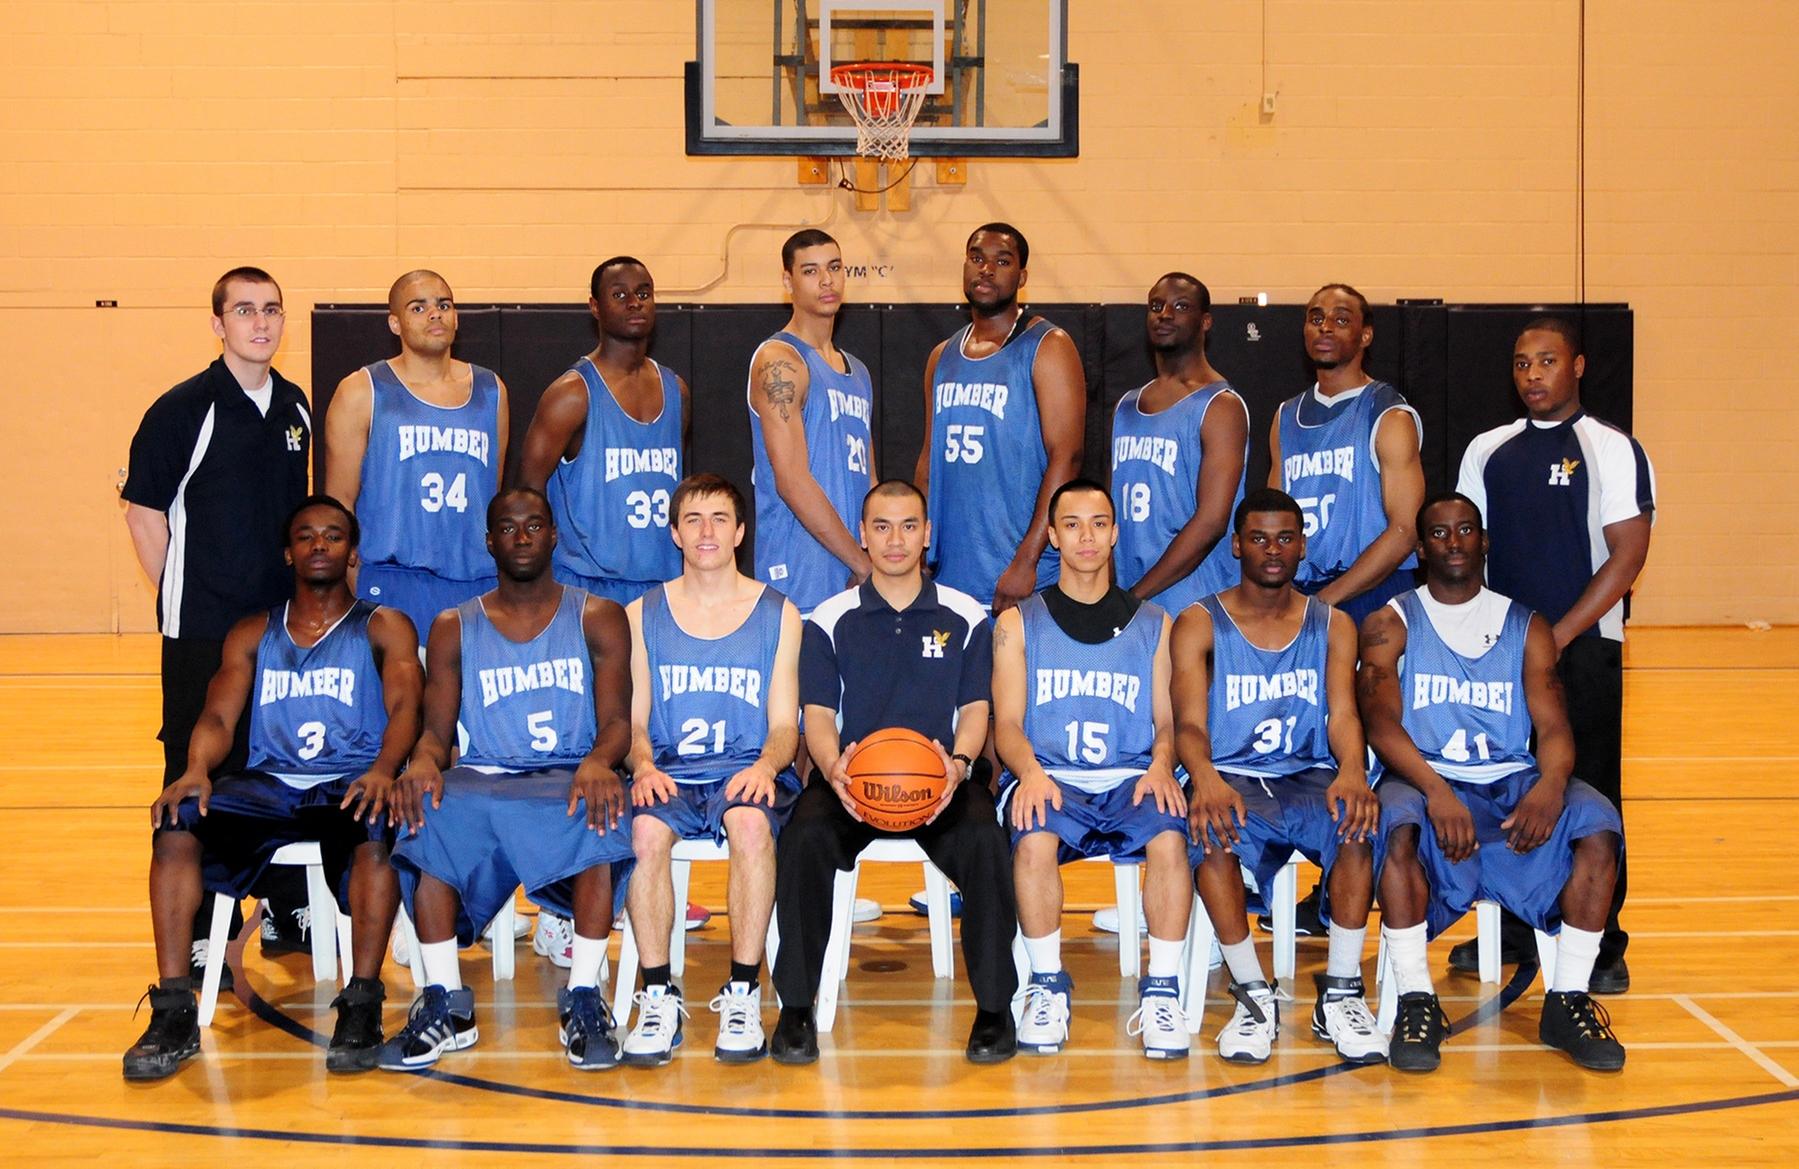 2007-08 Men's extramural basketball team photo